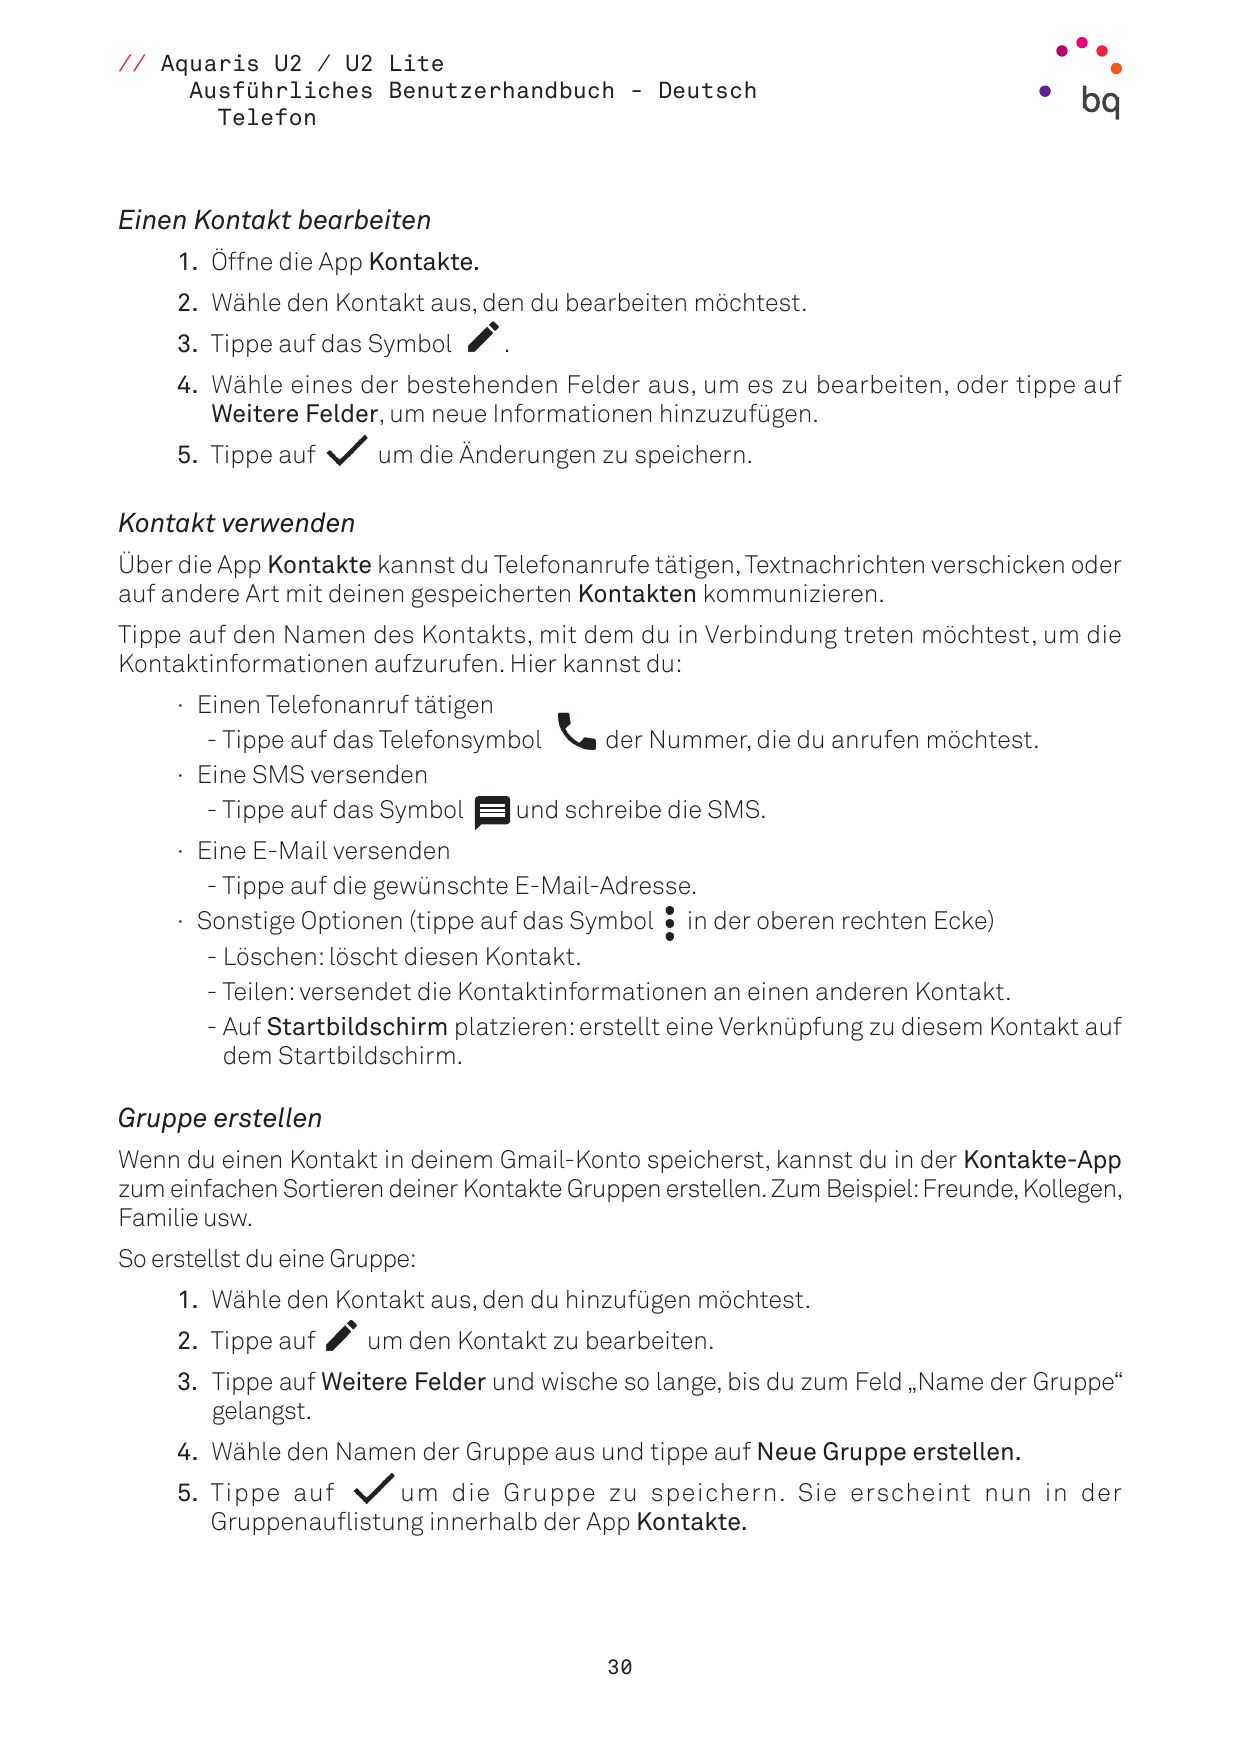 // Aquaris U2 / U2 LiteAusführliches Benutzerhandbuch - DeutschTelefonEinen Kontakt bearbeiten1. Öffne die App Kontakte.2. Wähle